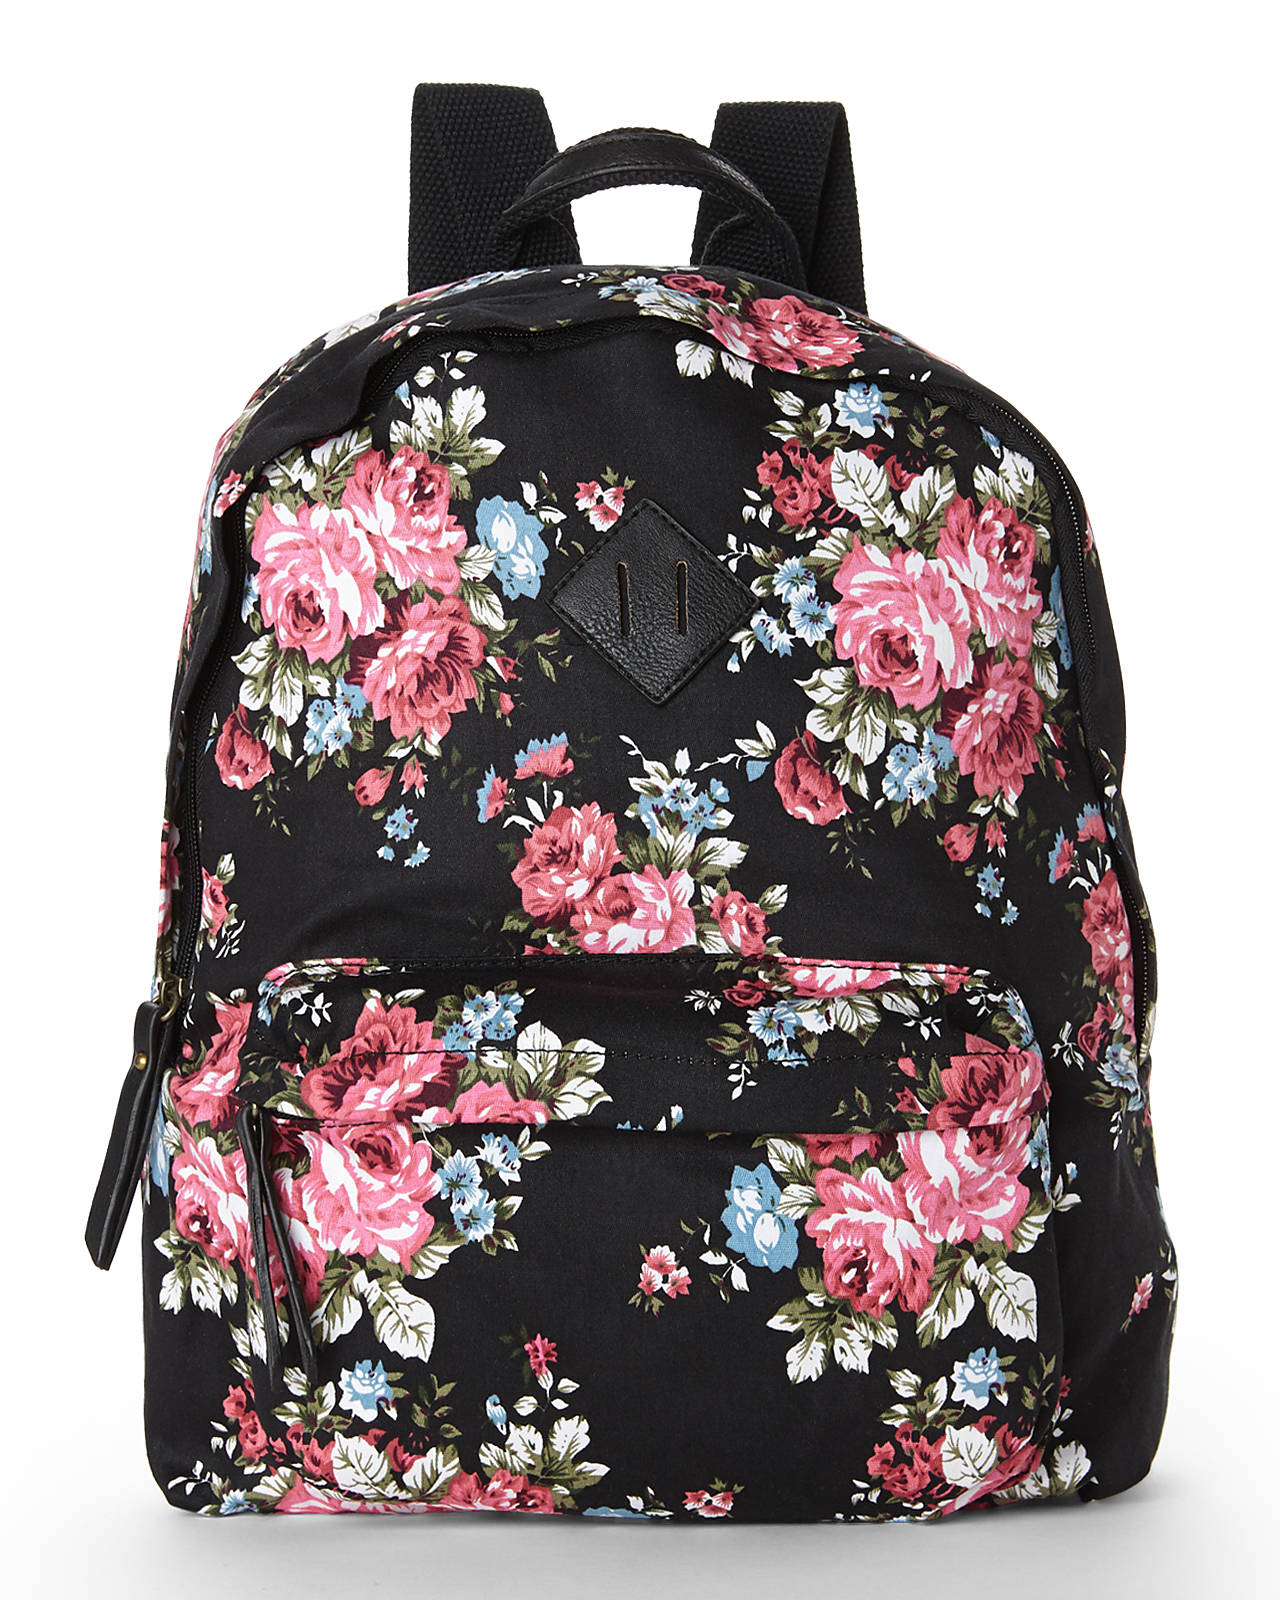 Lyst - Madden Girl Black & Rose Floral Backpack